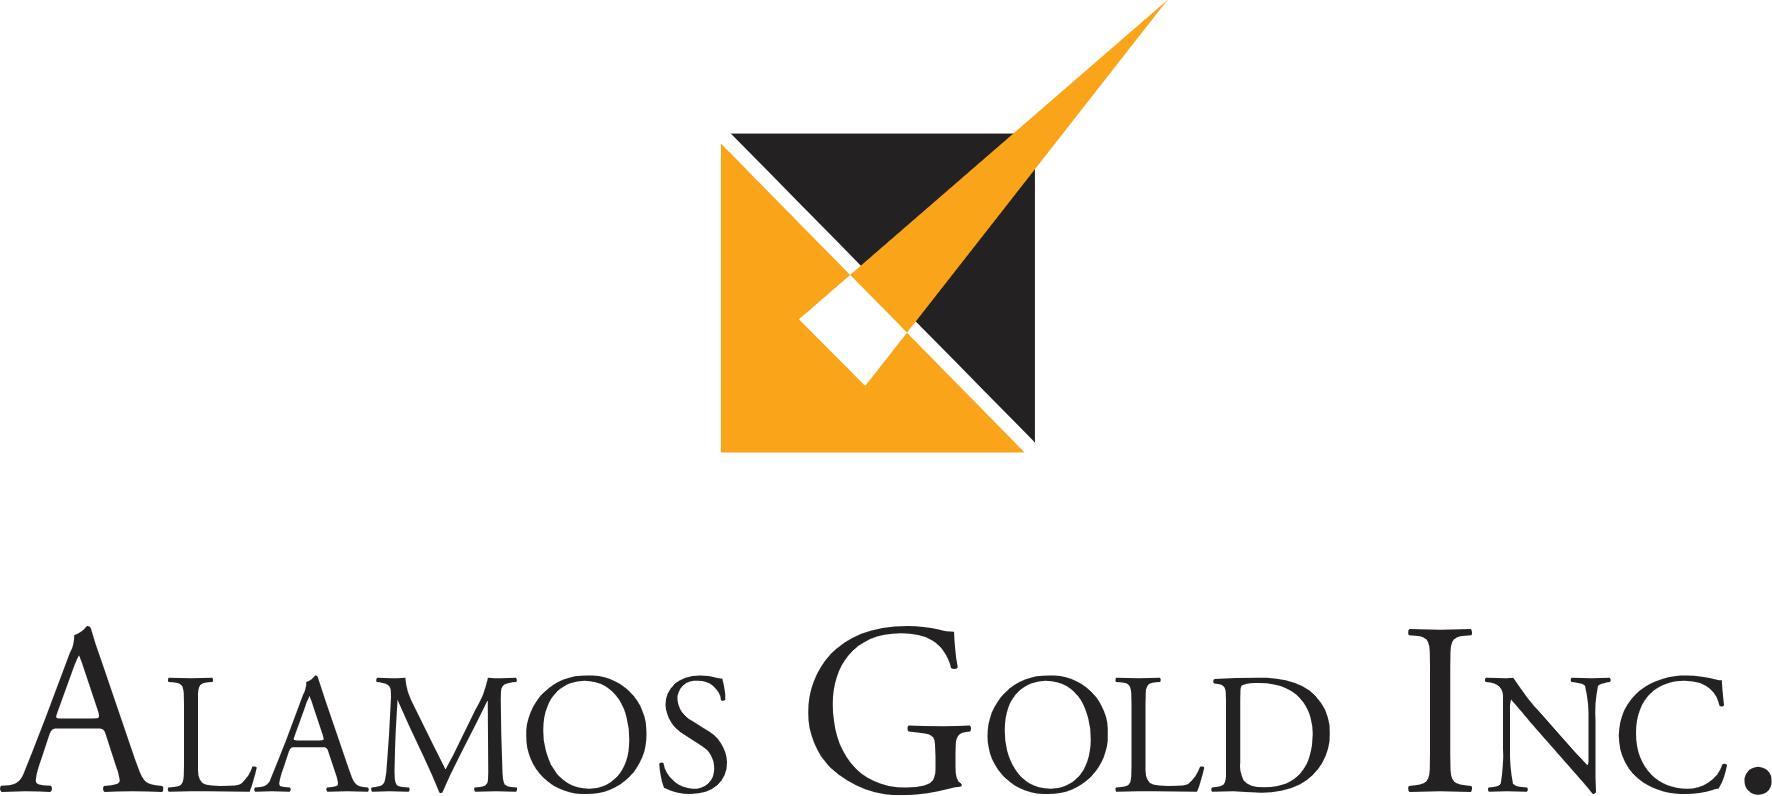 Alamos Gold logo large (transparent PNG)